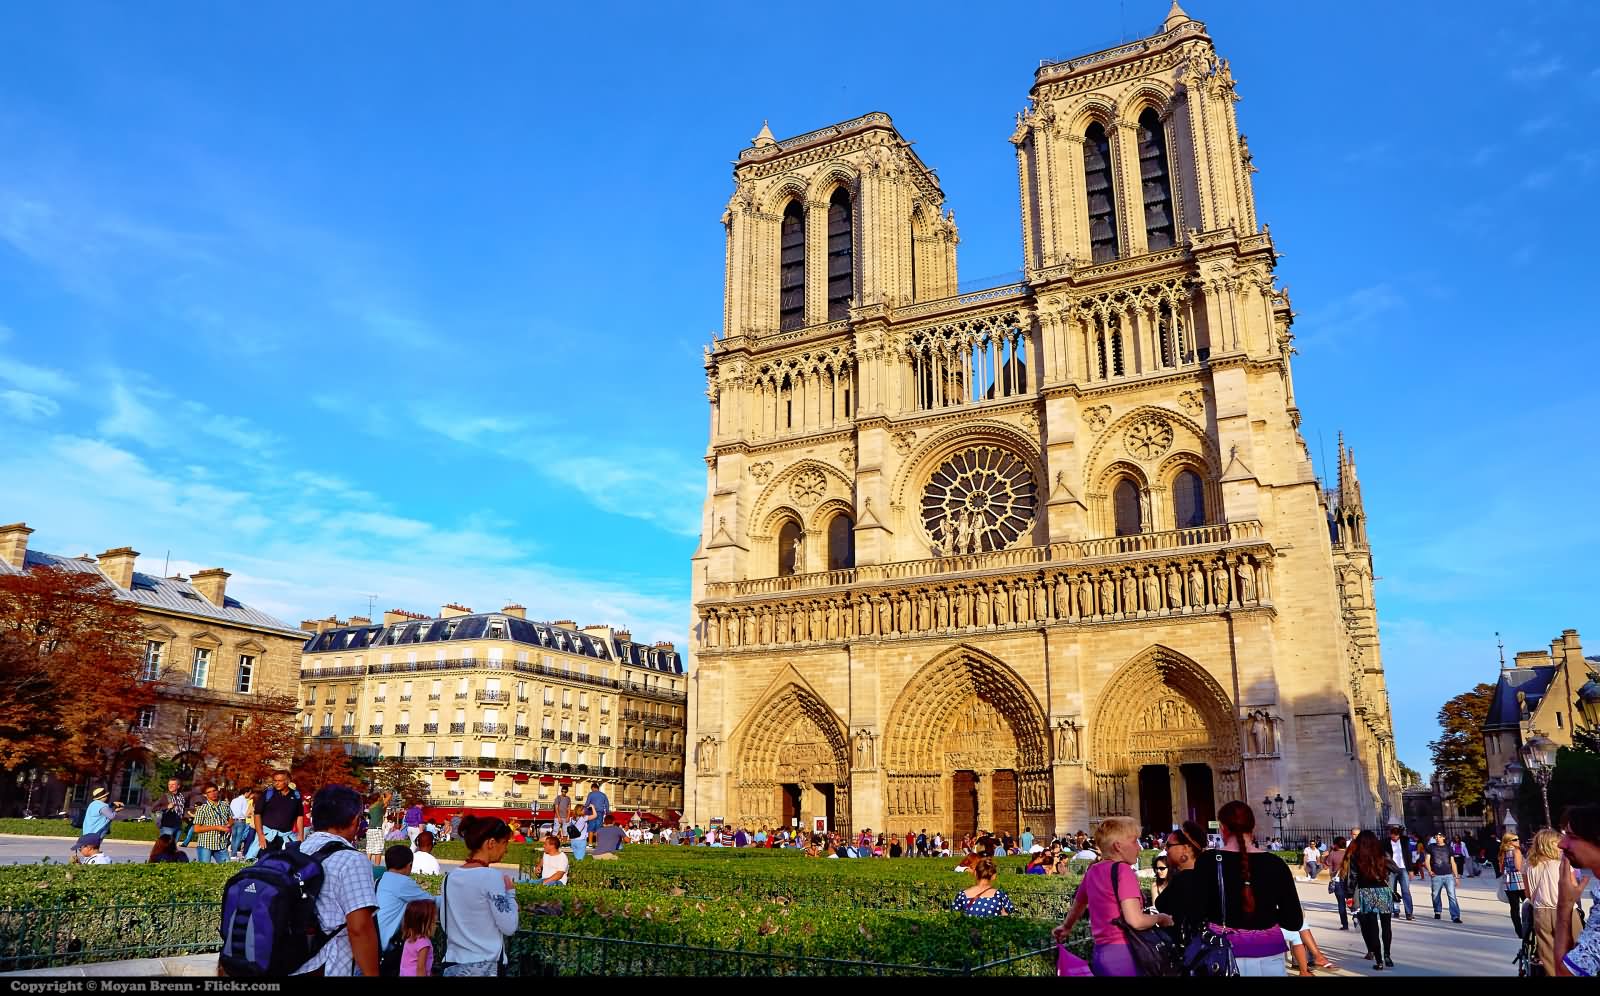 31 Notre Dame De Paris Images And Pictures